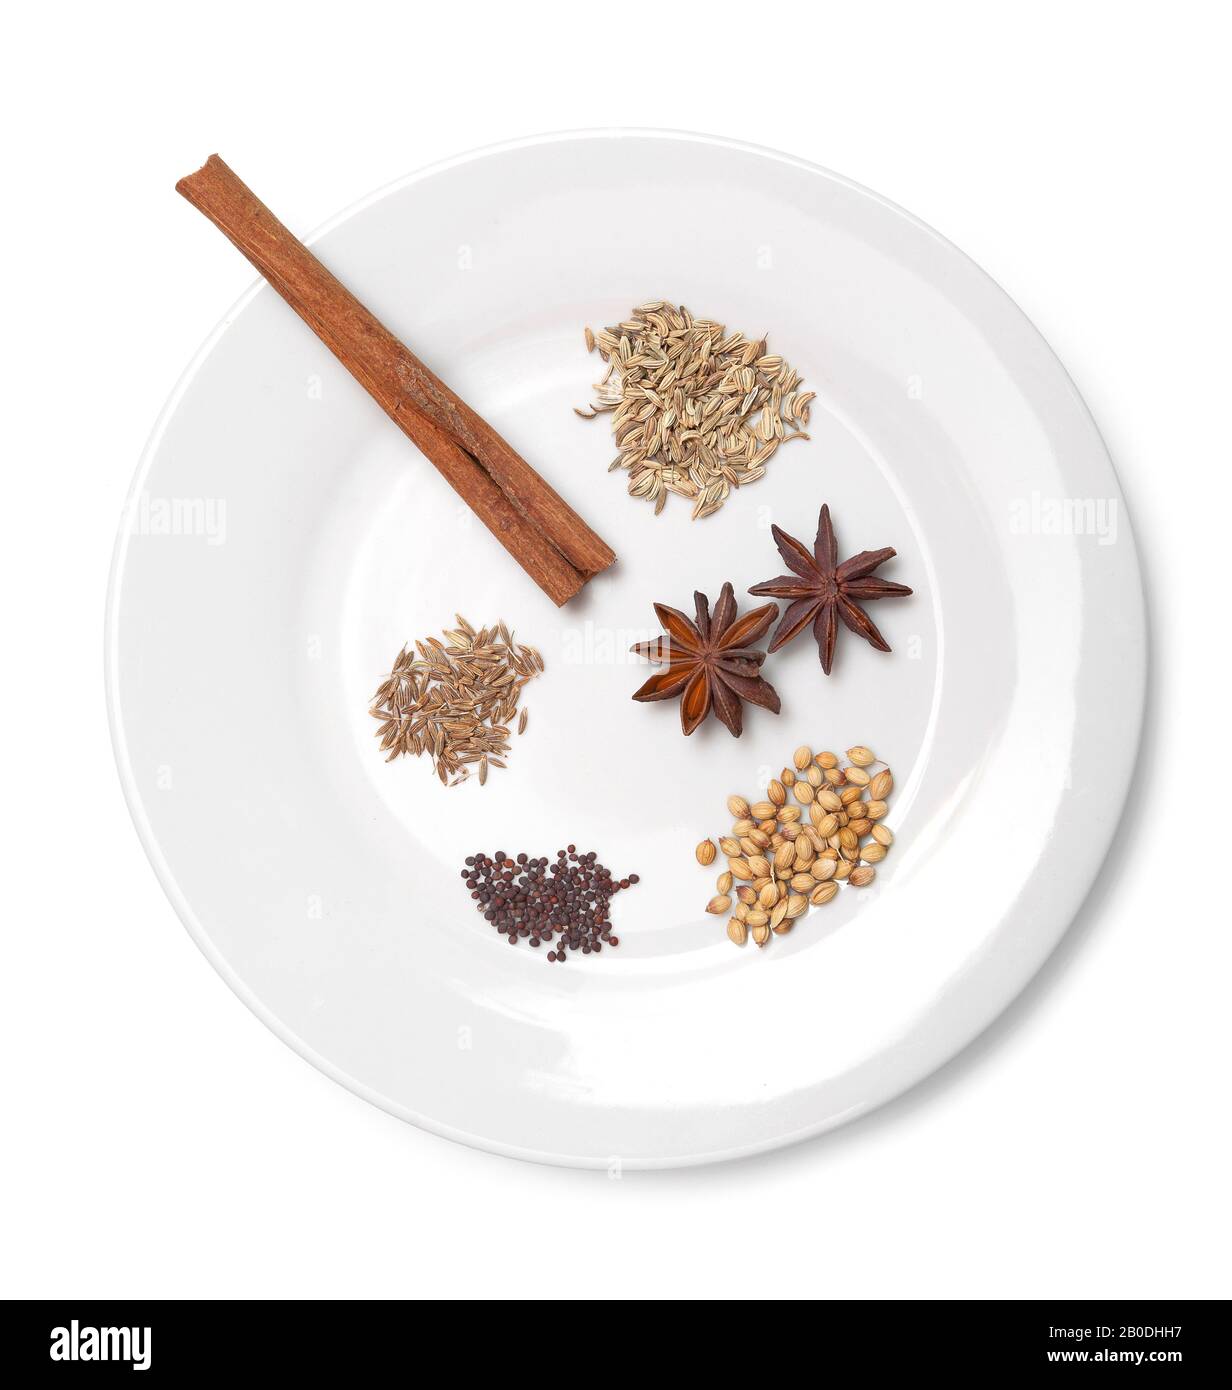 Una piccola varietà di spezie popolari su una piastra bianca, semi di finocchio, semi di cumino, anice stellato, semi di senape, corteccia della cannella Foto Stock